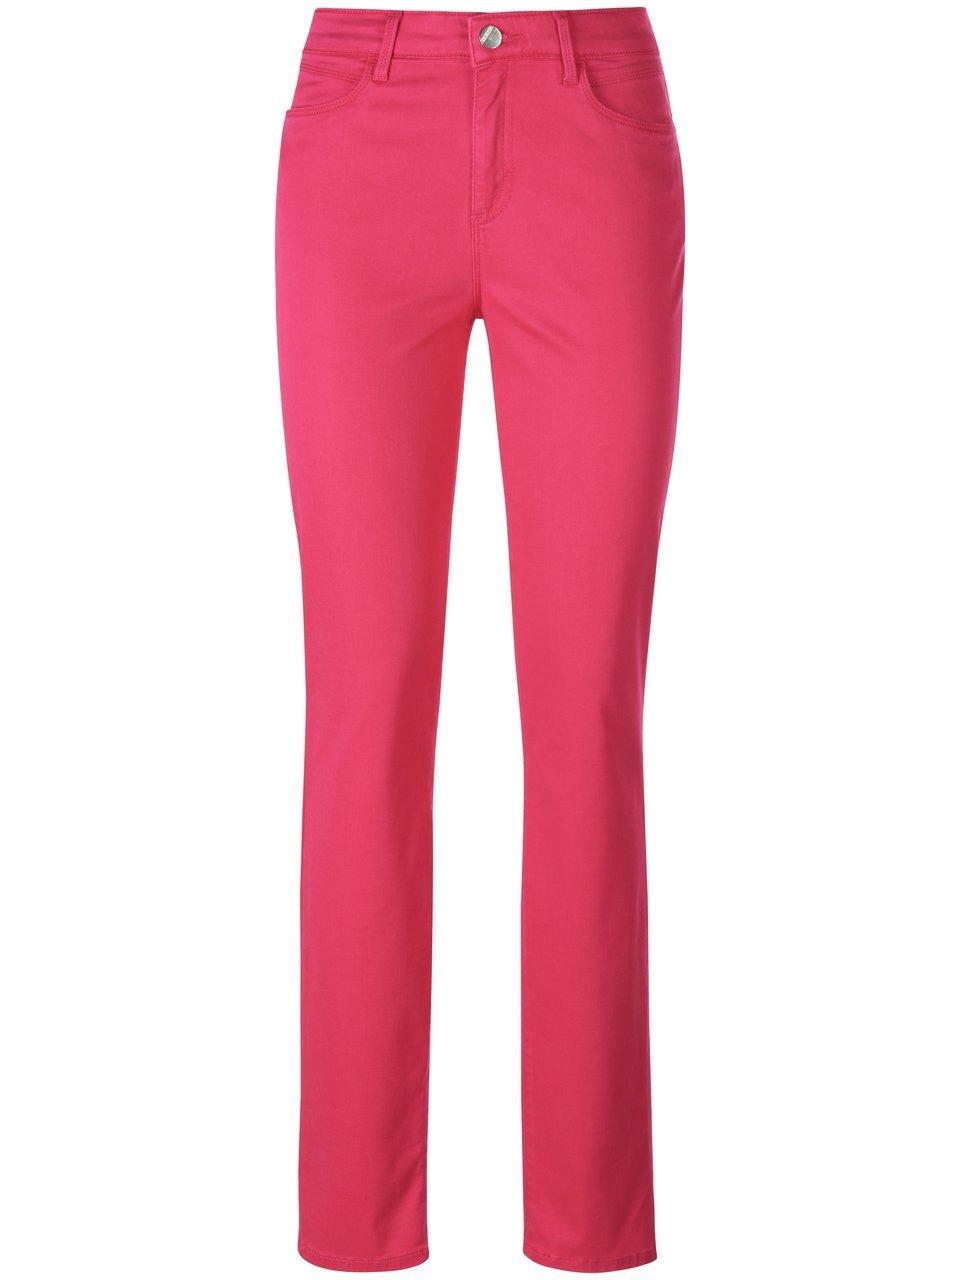 Jeans Van Brax Feel Good pink